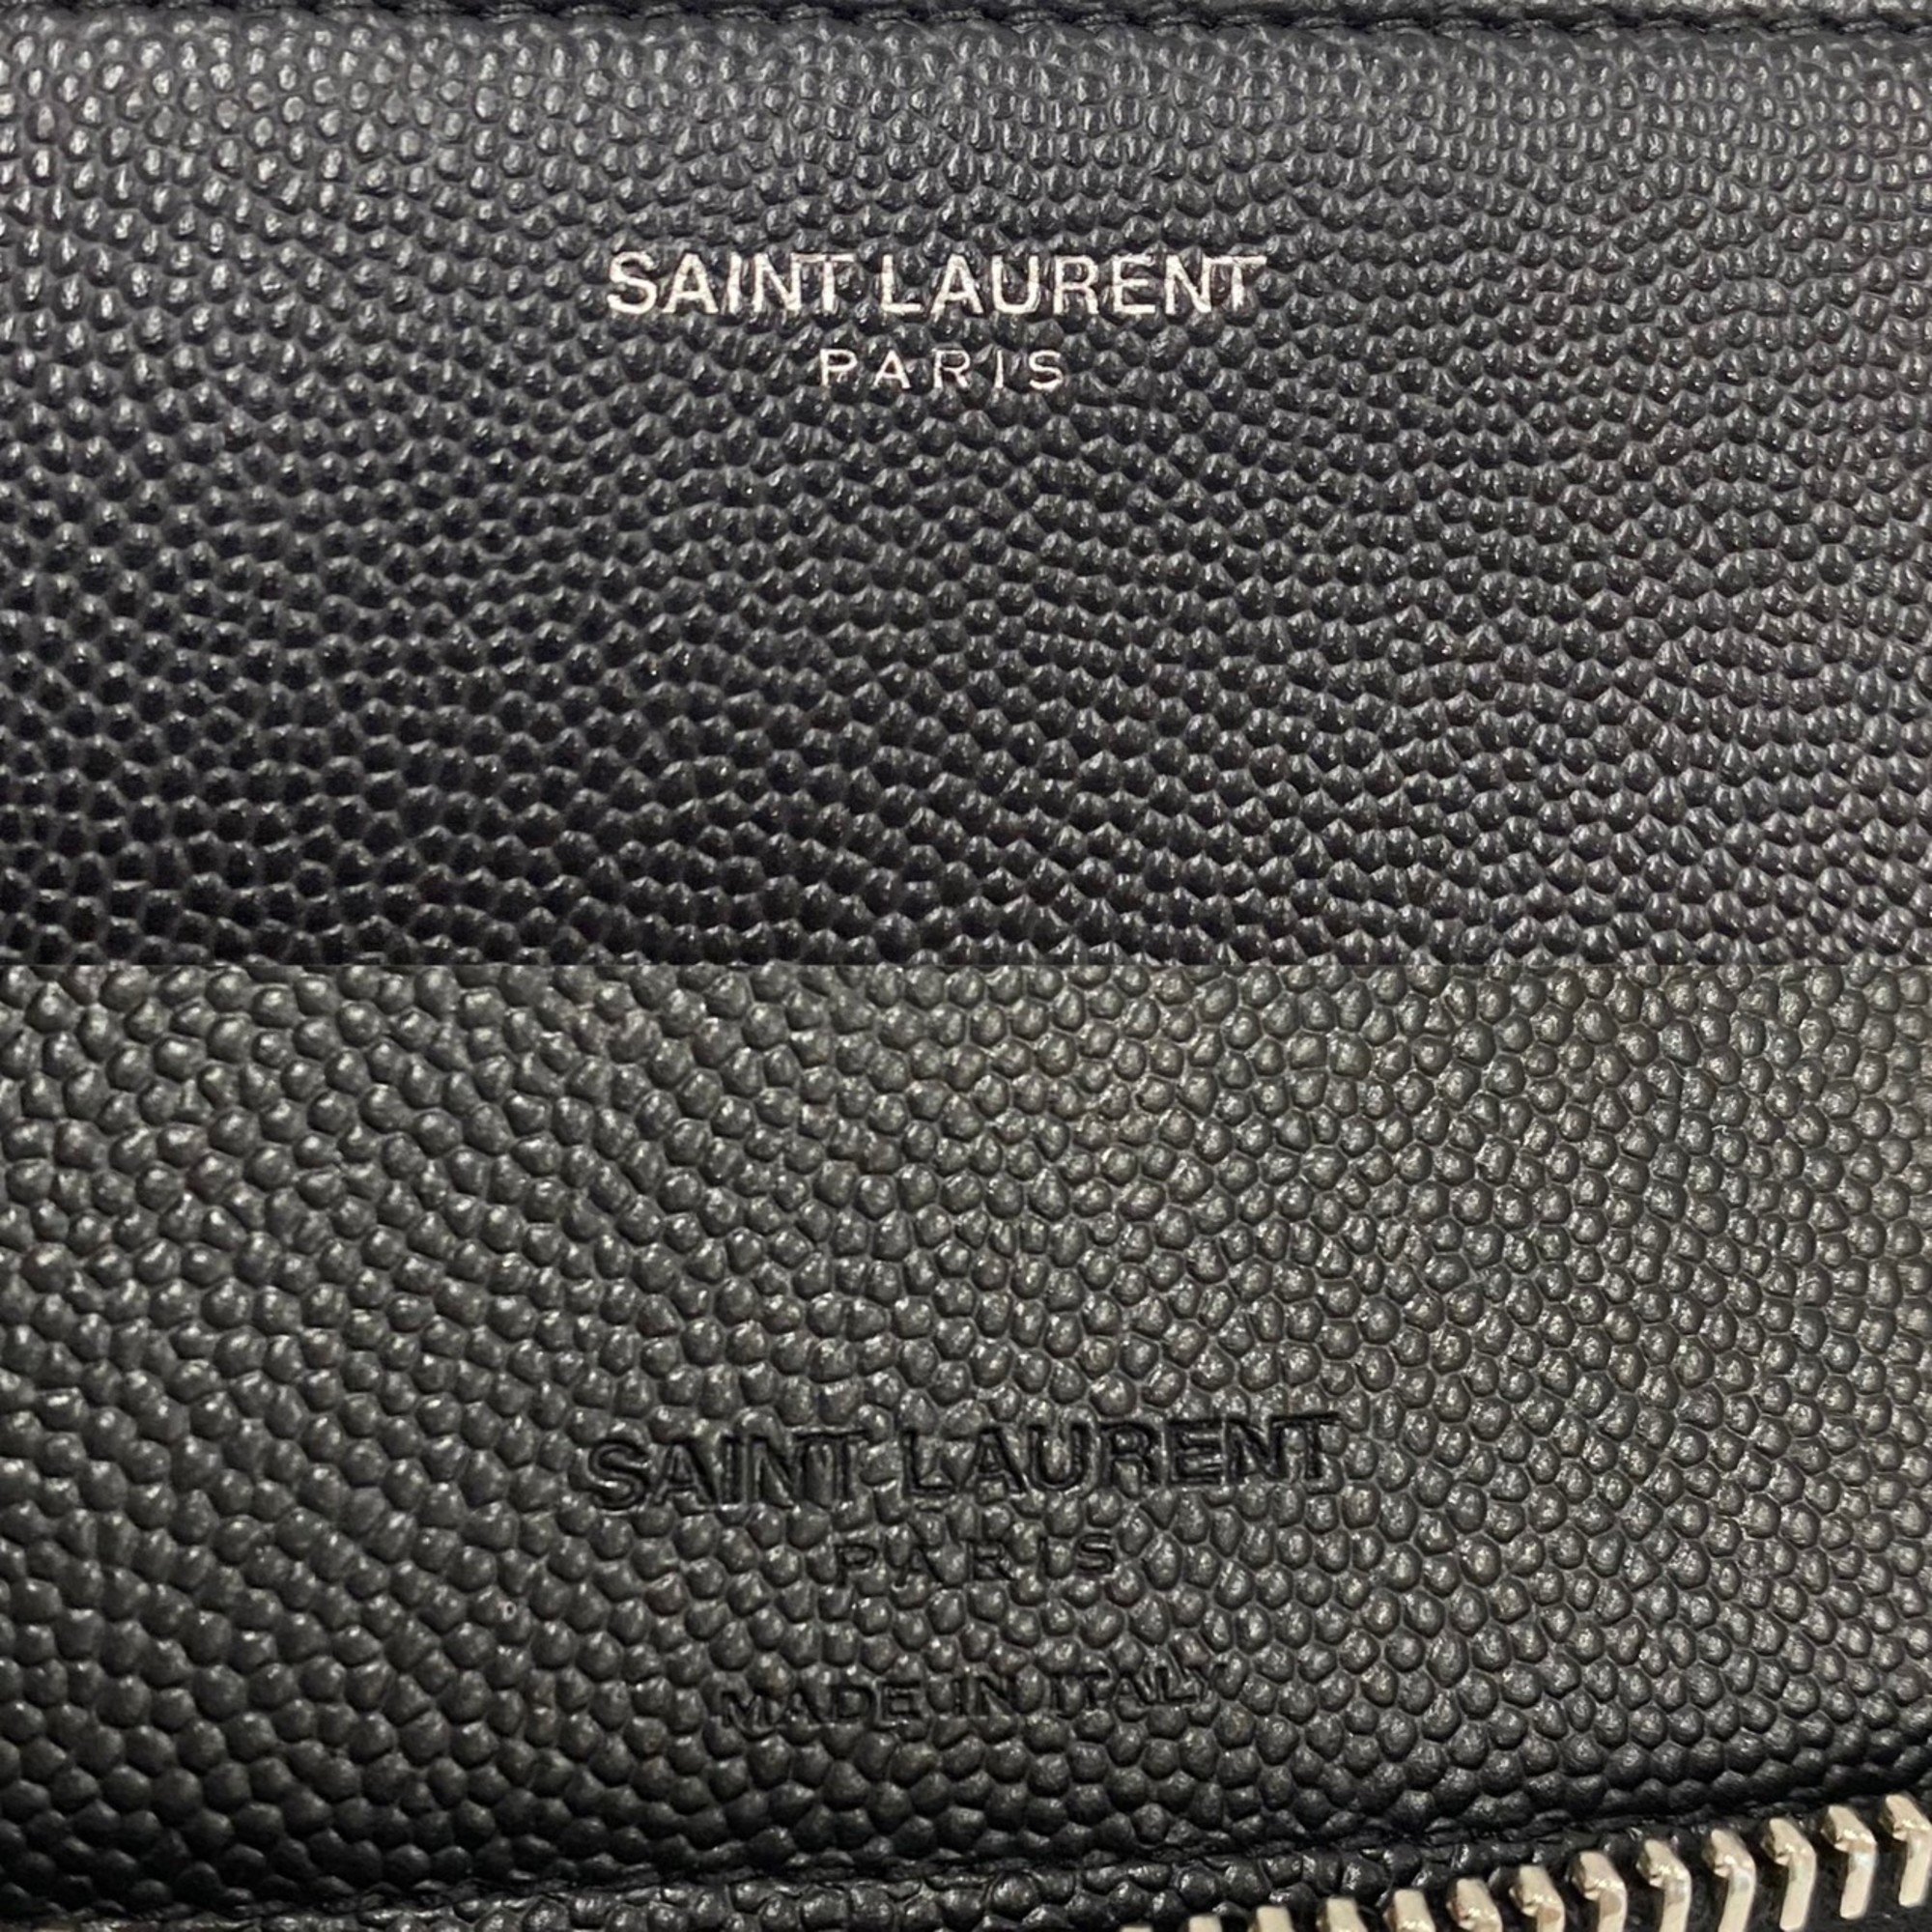 Yves Saint Laurent SAINT LAURENT PARIS Saint Laurent Paris Logo Leather Genuine Round Zip Long Wallet Card Case Black